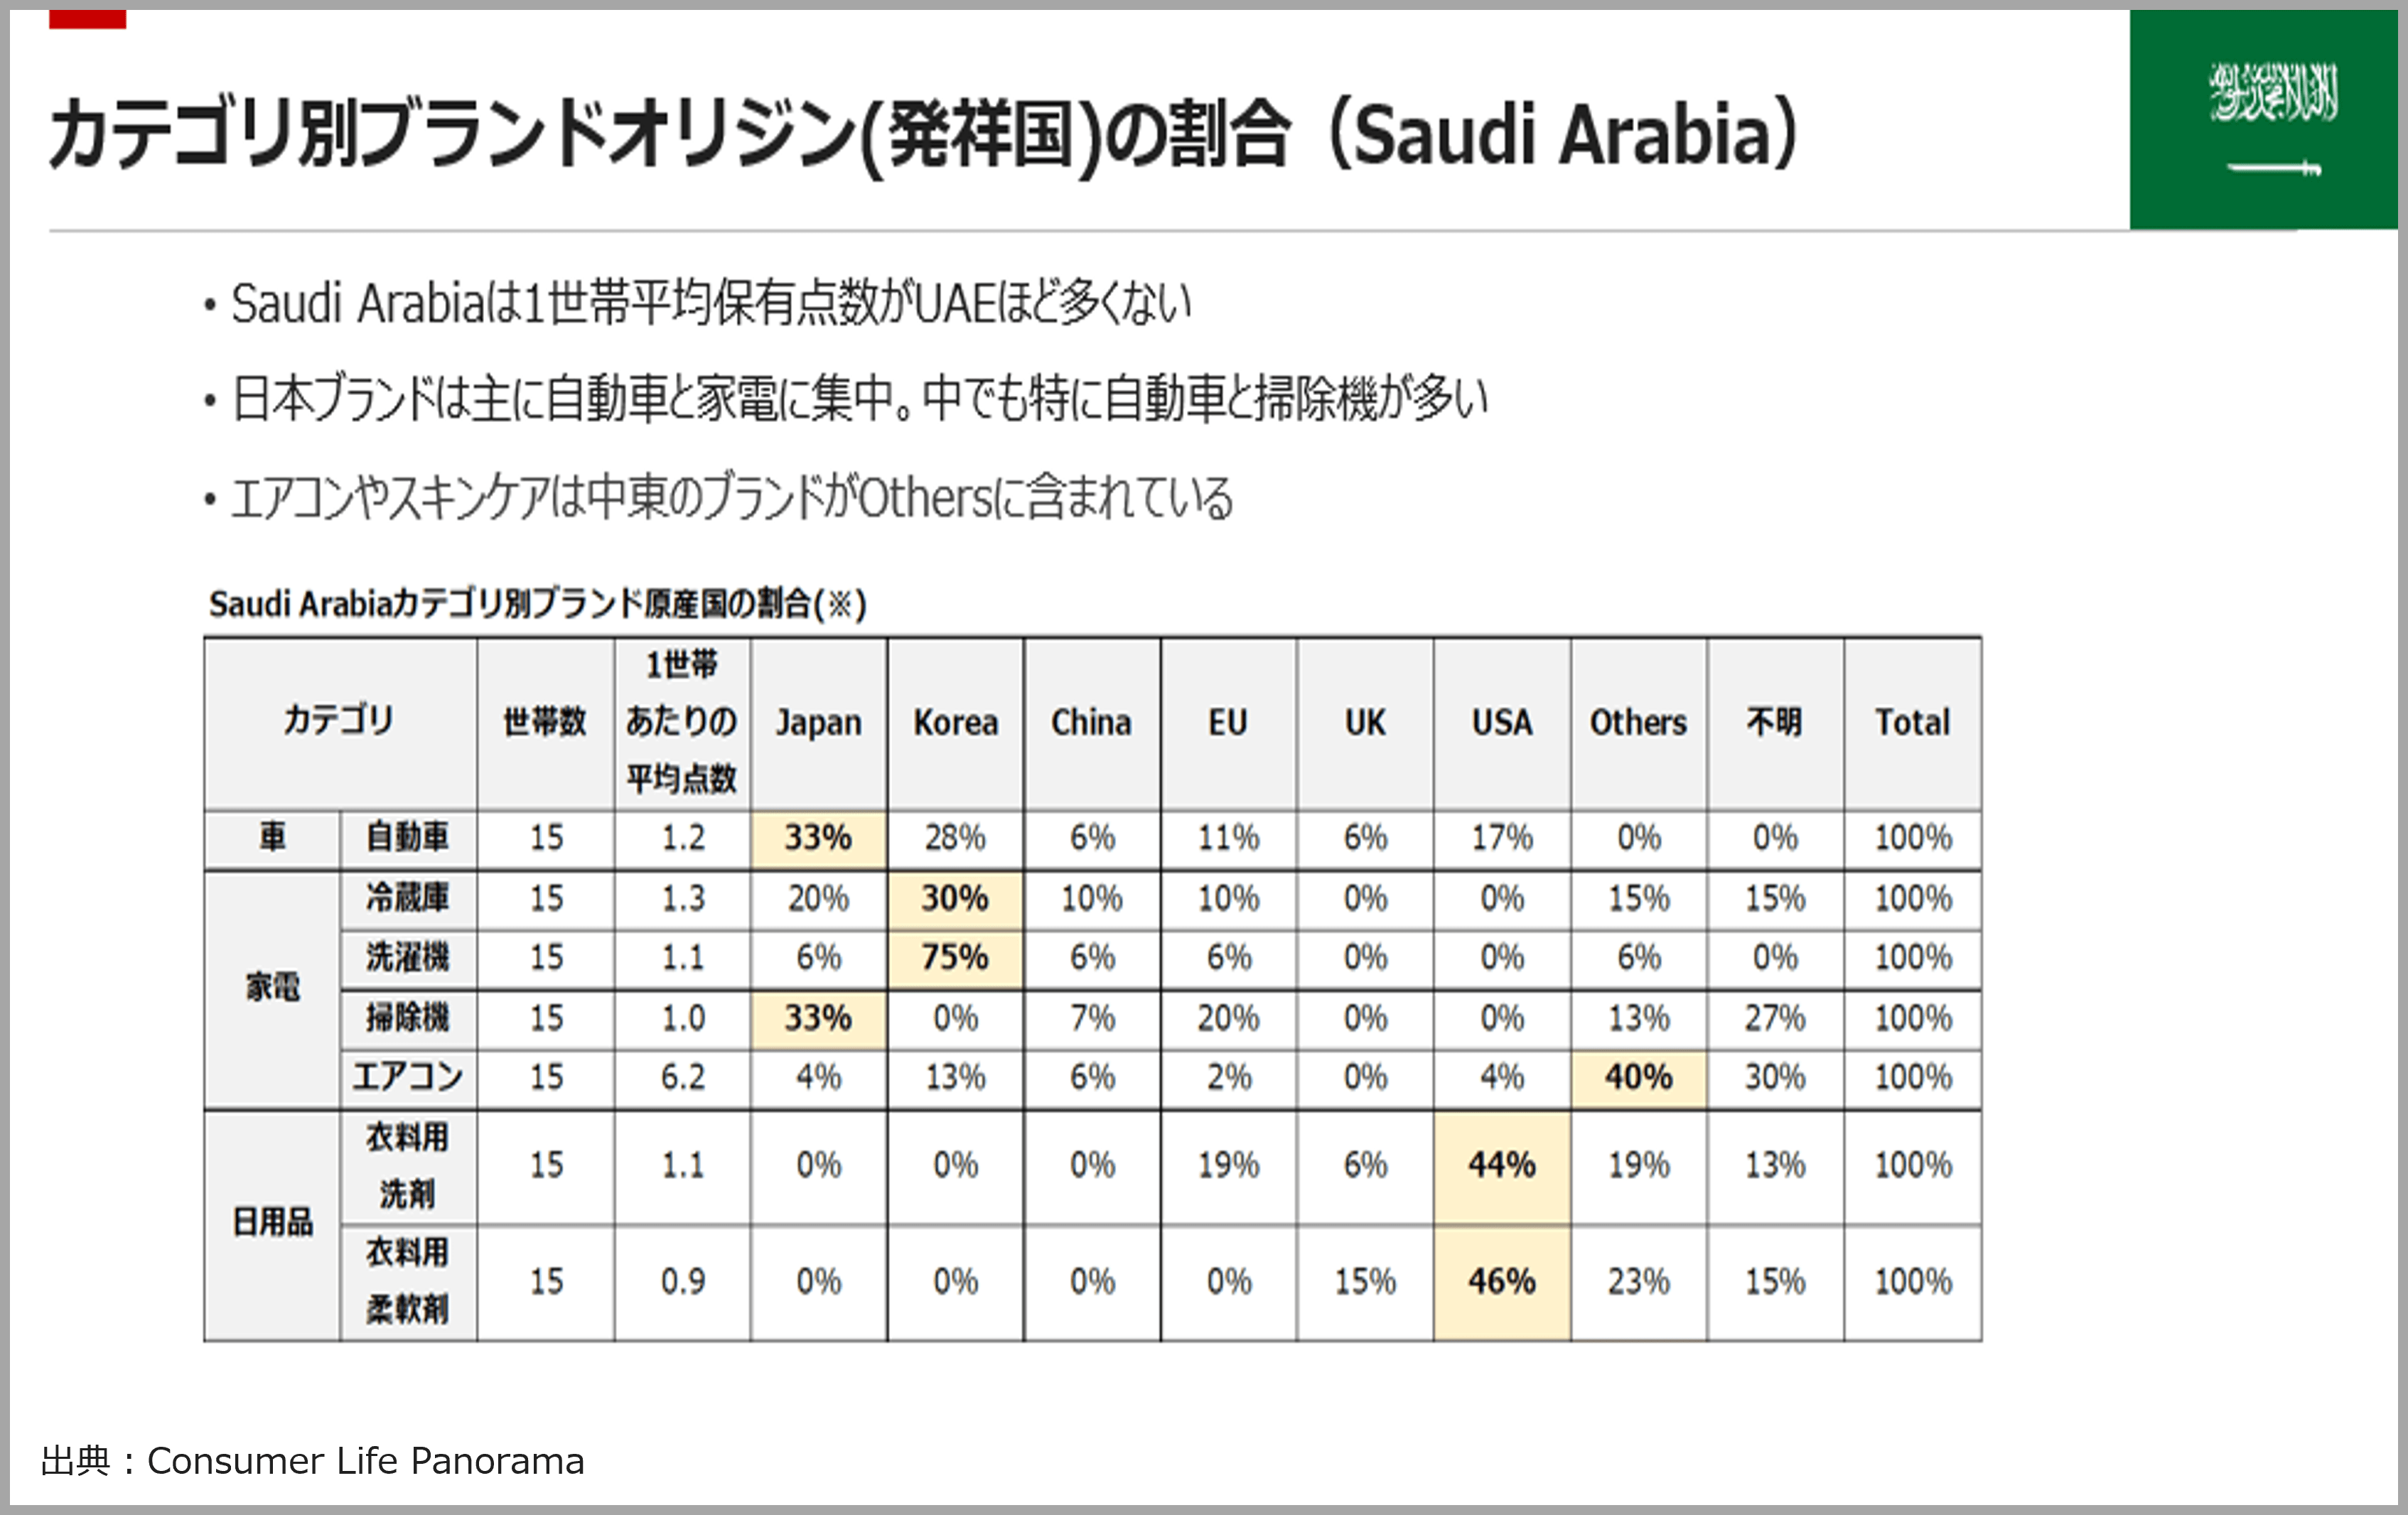 カテゴリ別ブランドオリジン（発祥国）の割合（Saudi Arabia）